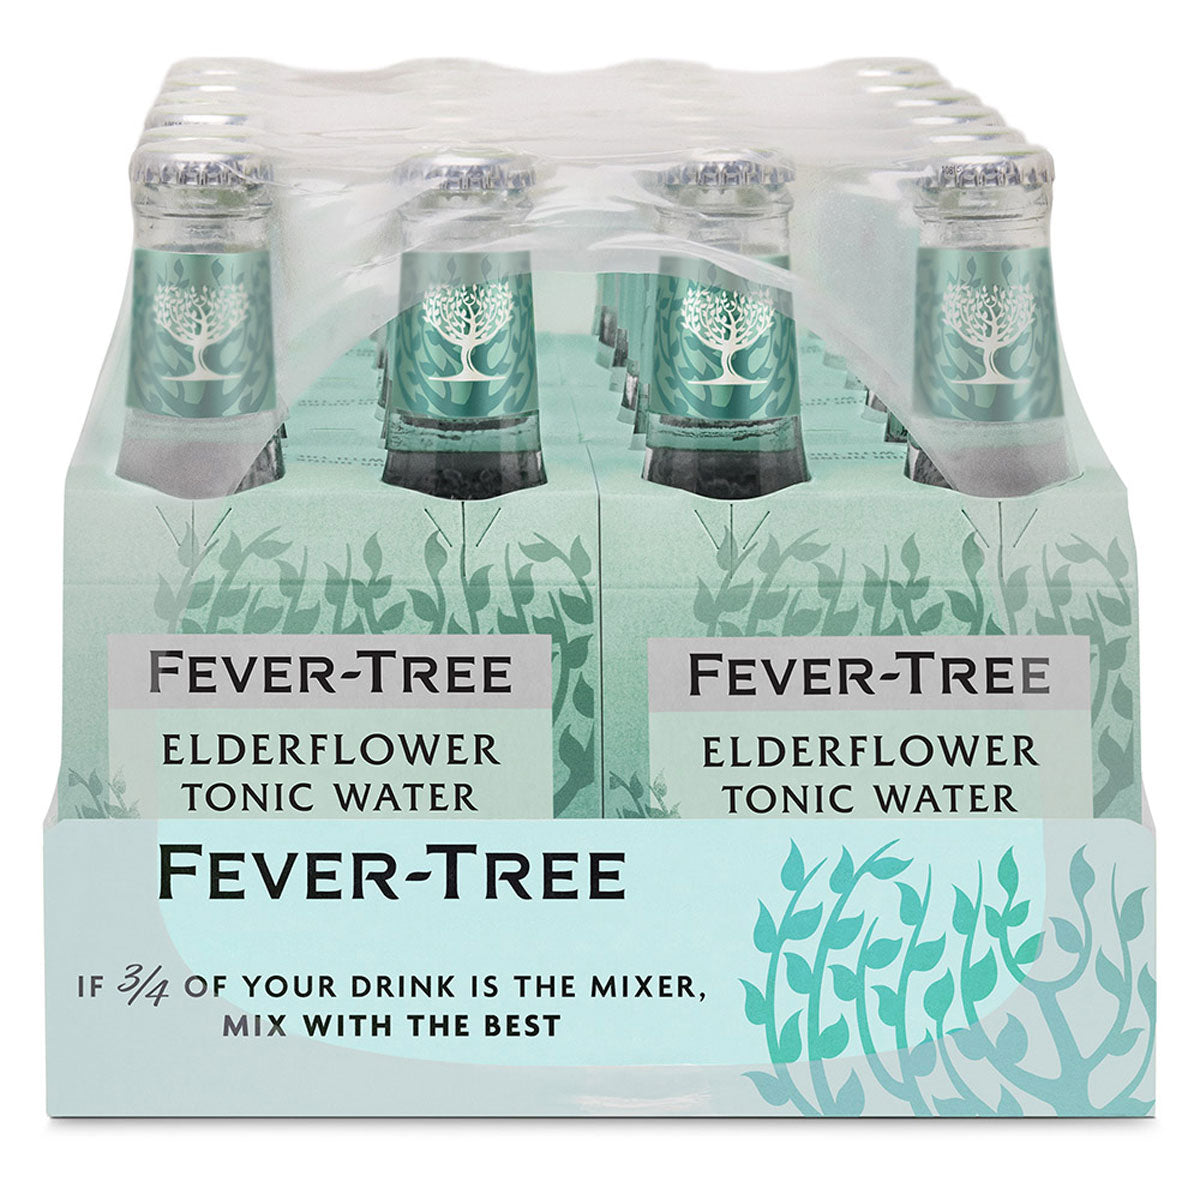 Fever-Tree Elderflower Tonic Water 200 Ml Bottle